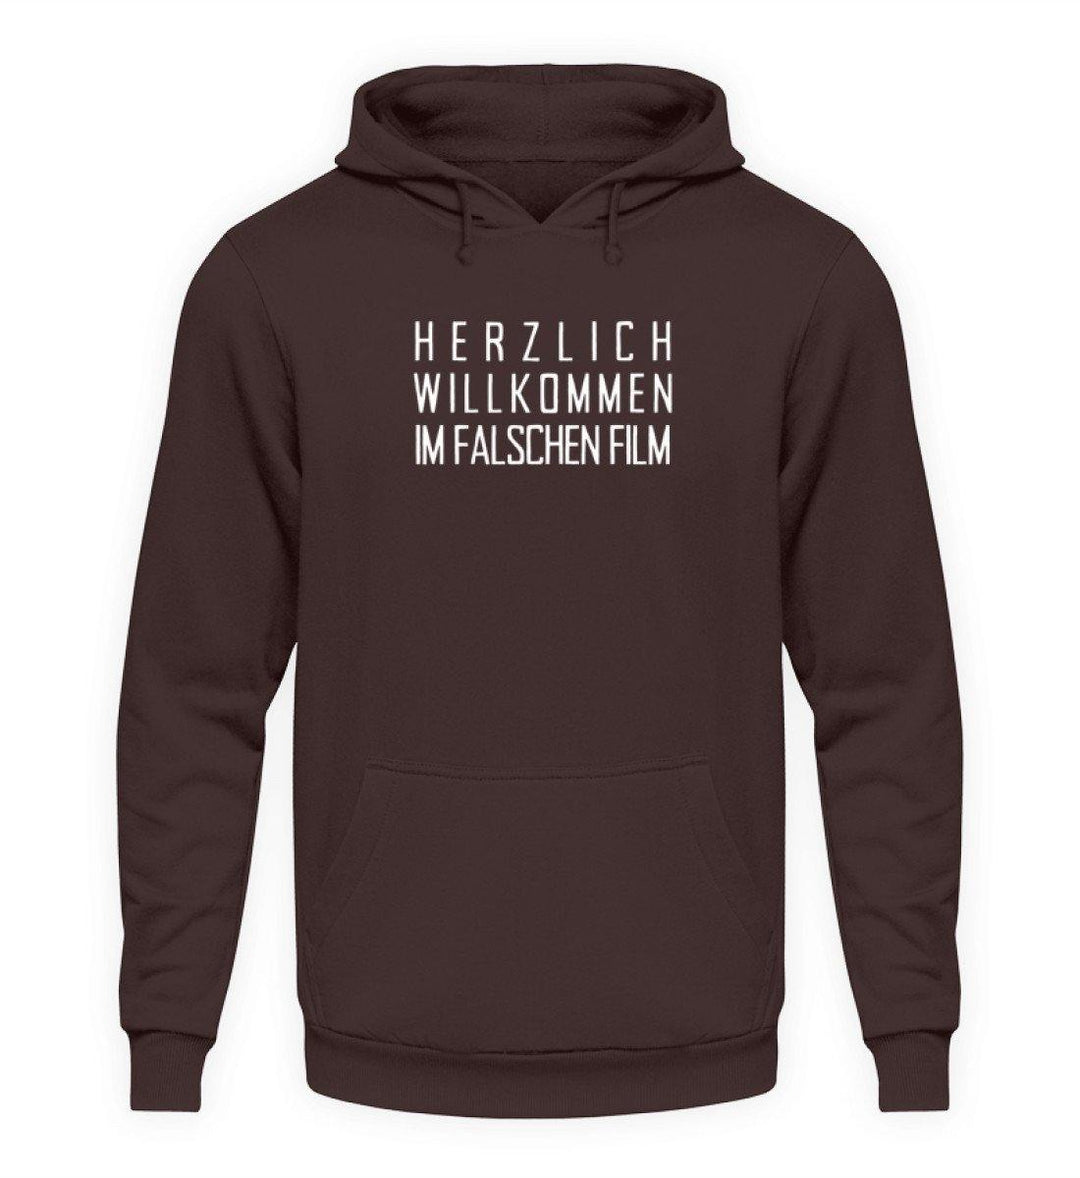 Herzlich willkommen im falschen Film  - Unisex Kapuzenpullover Hoodie - Words on Shirts